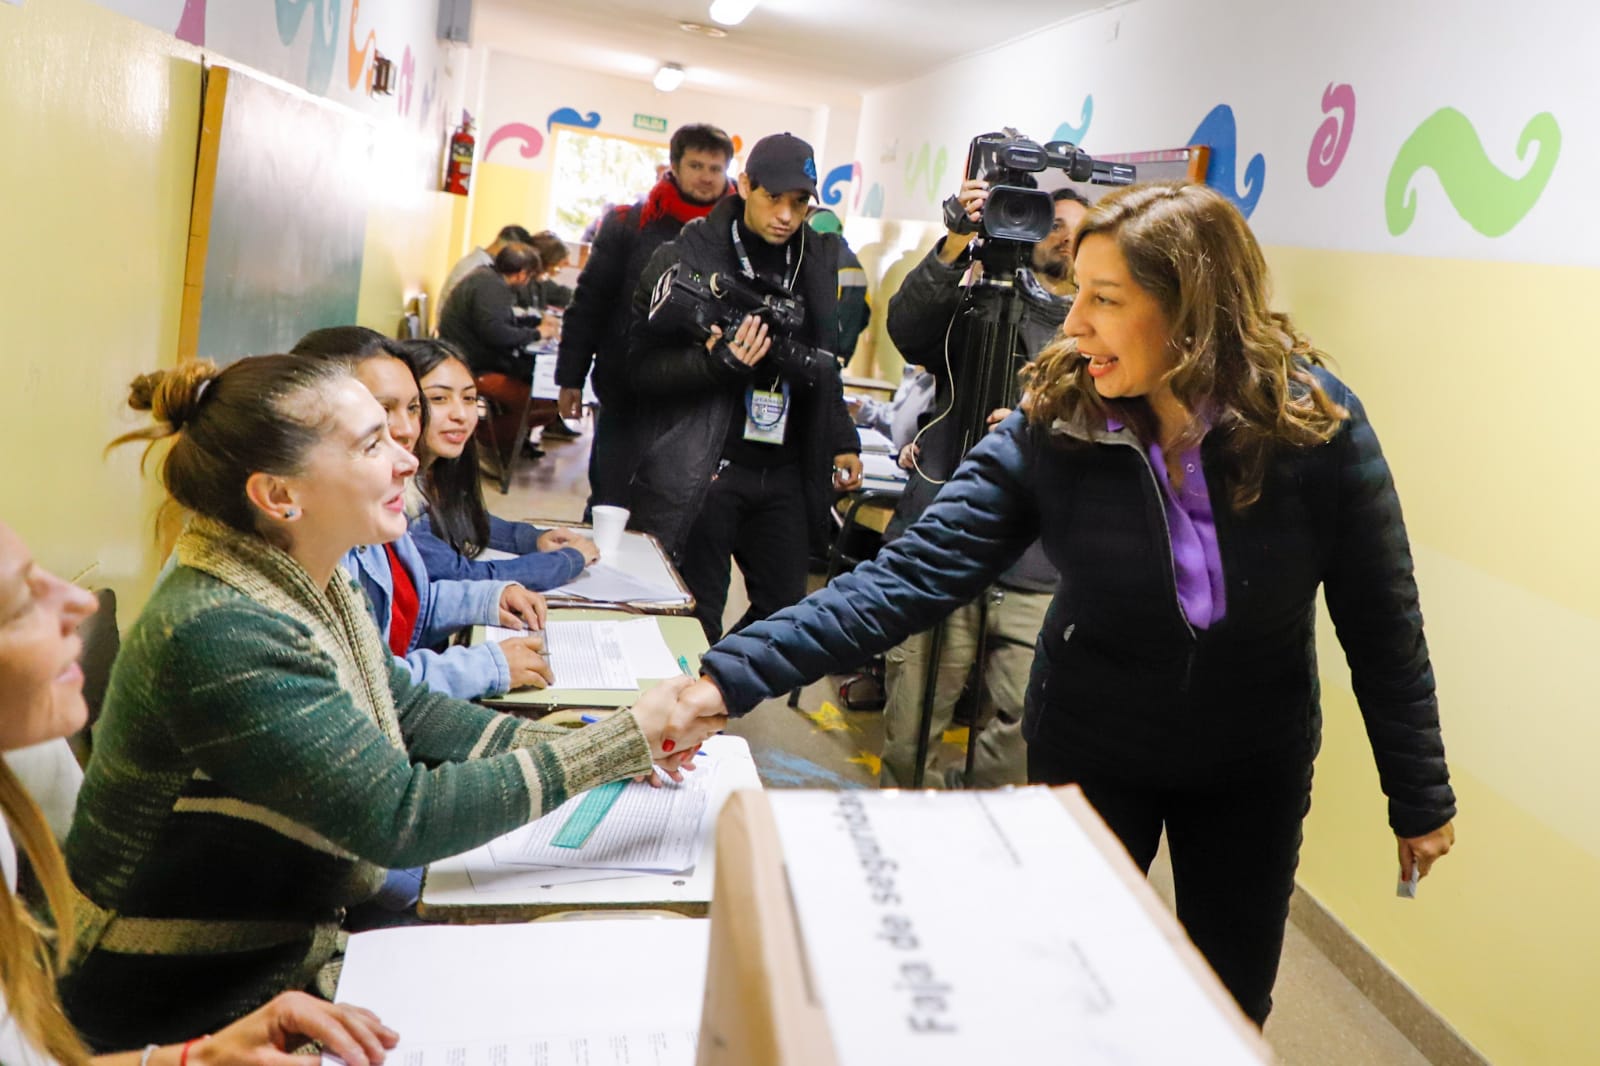 🗳️ Carreras votó en Bariloche: “una oportunidad para evaluar cómo venimos y hacia dónde queremos ir como sociedad”